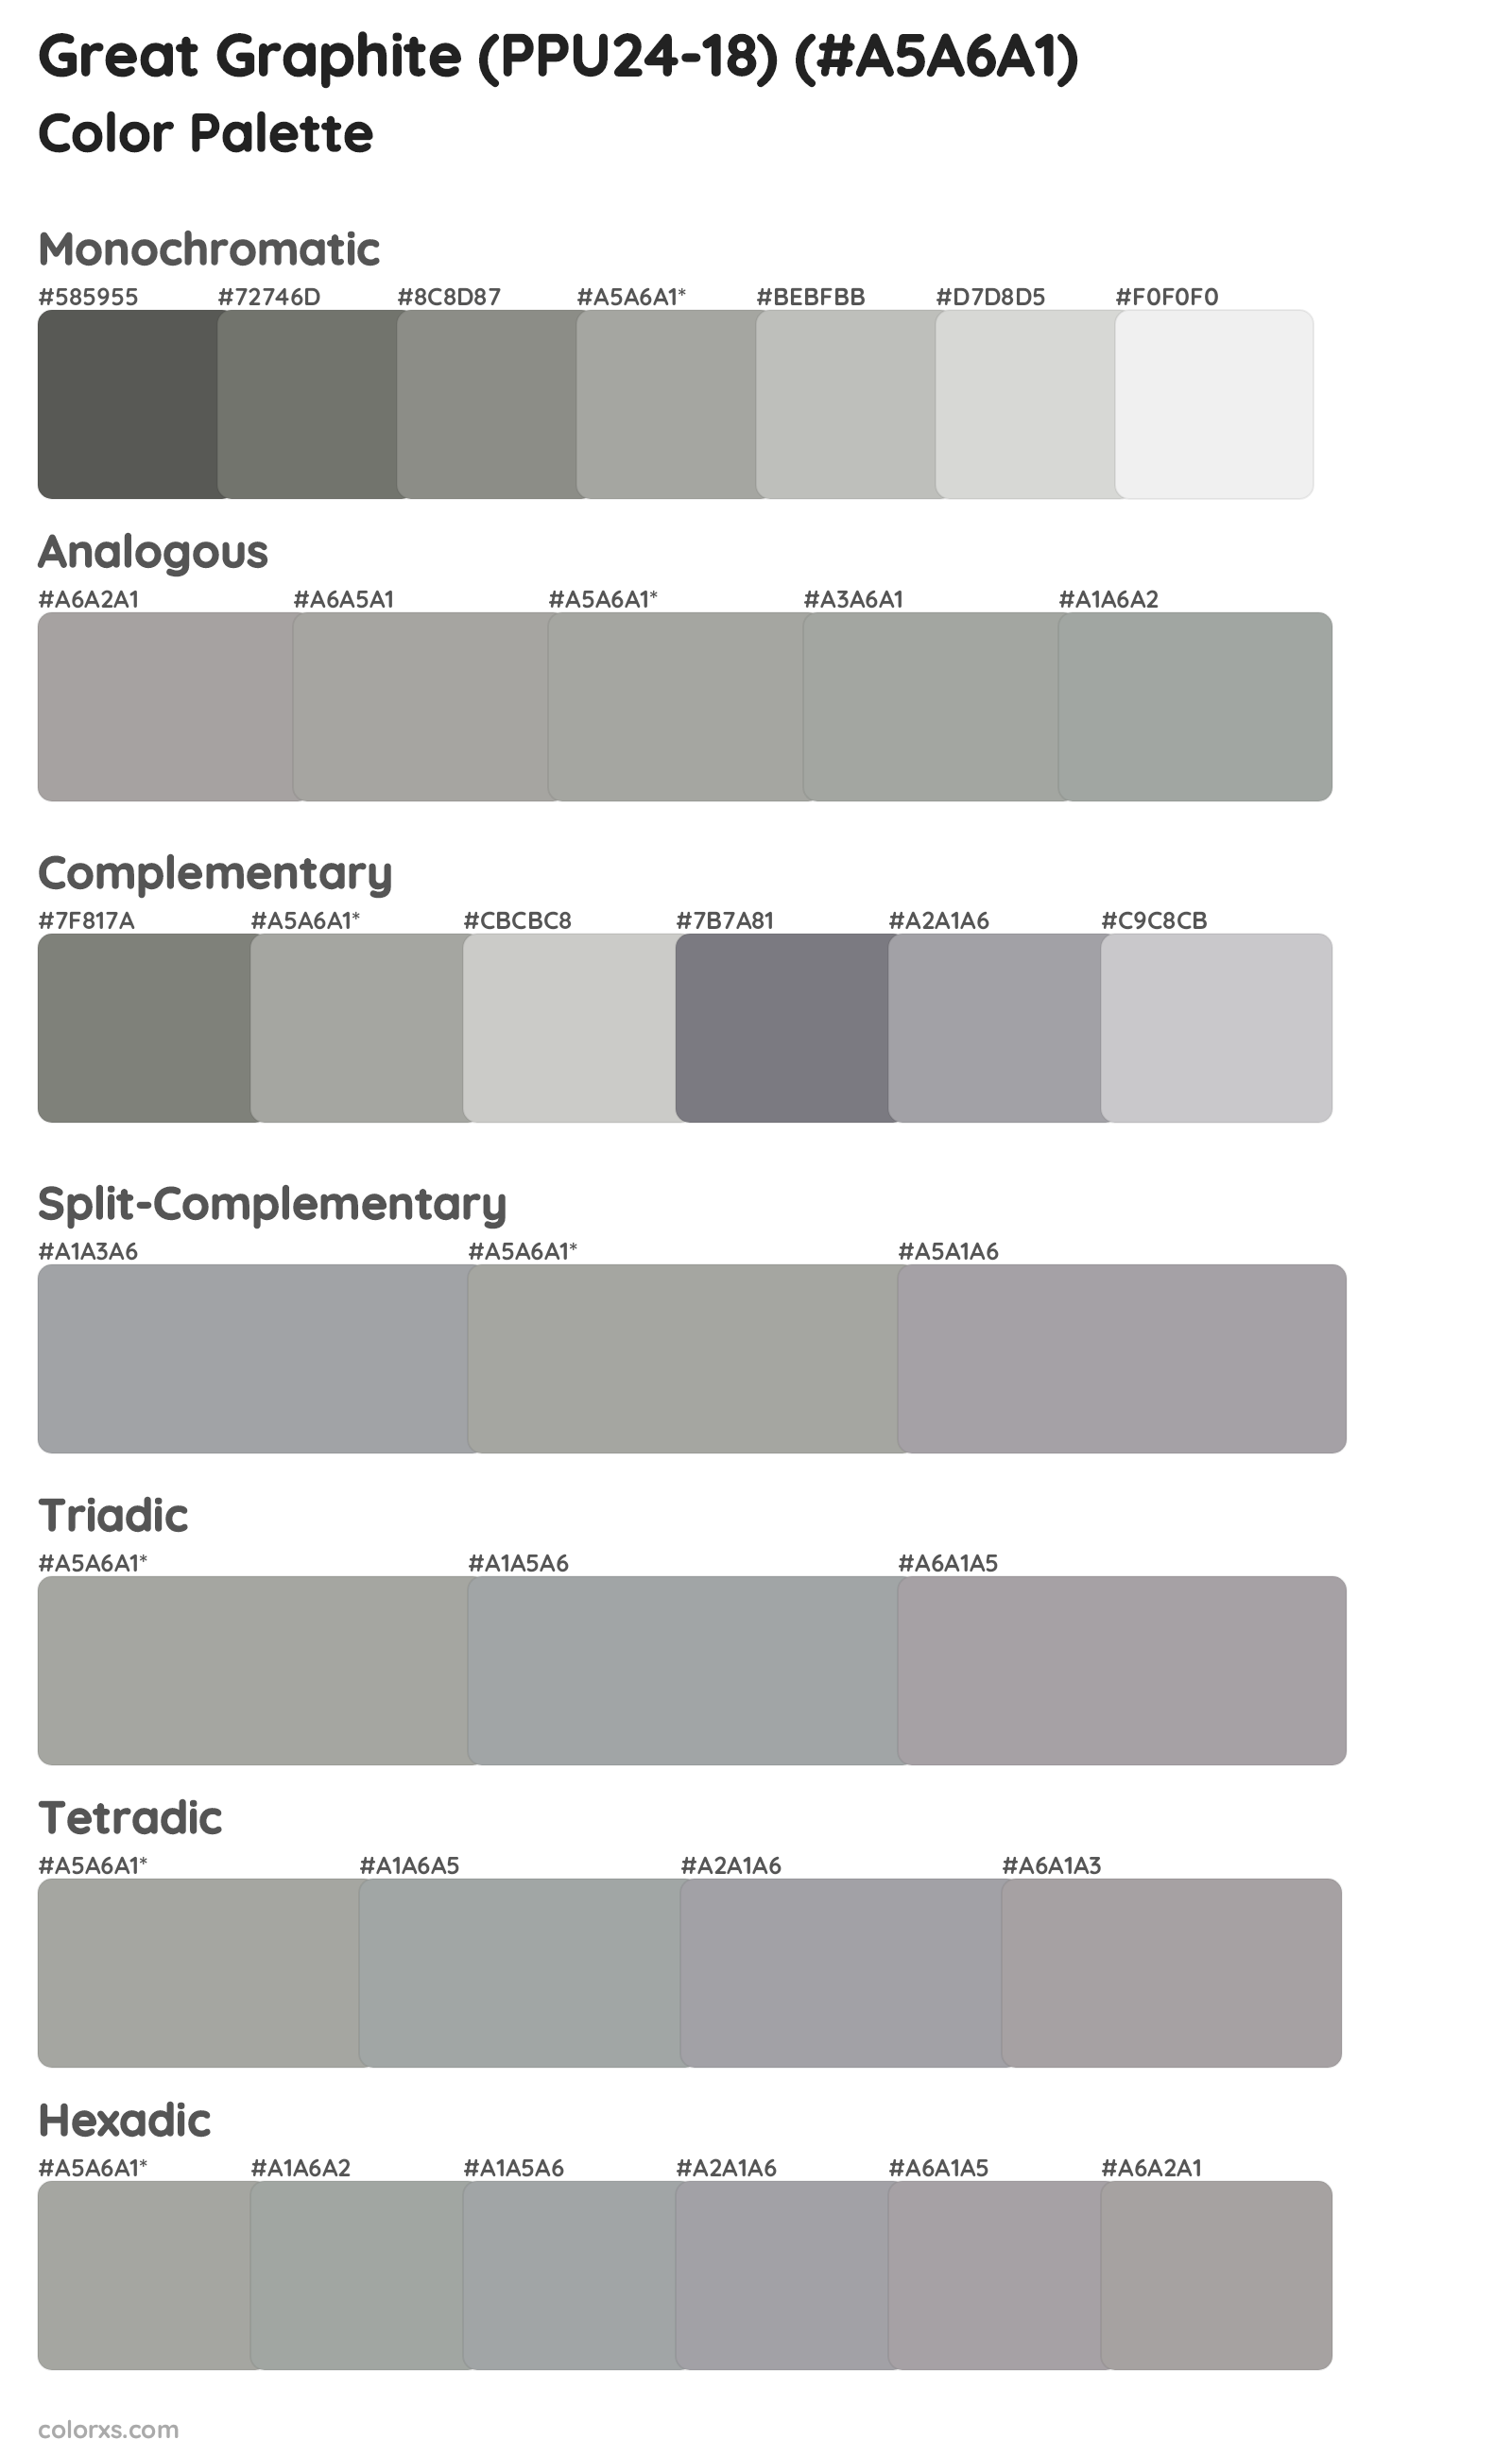 Great Graphite (PPU24-18) Color Scheme Palettes